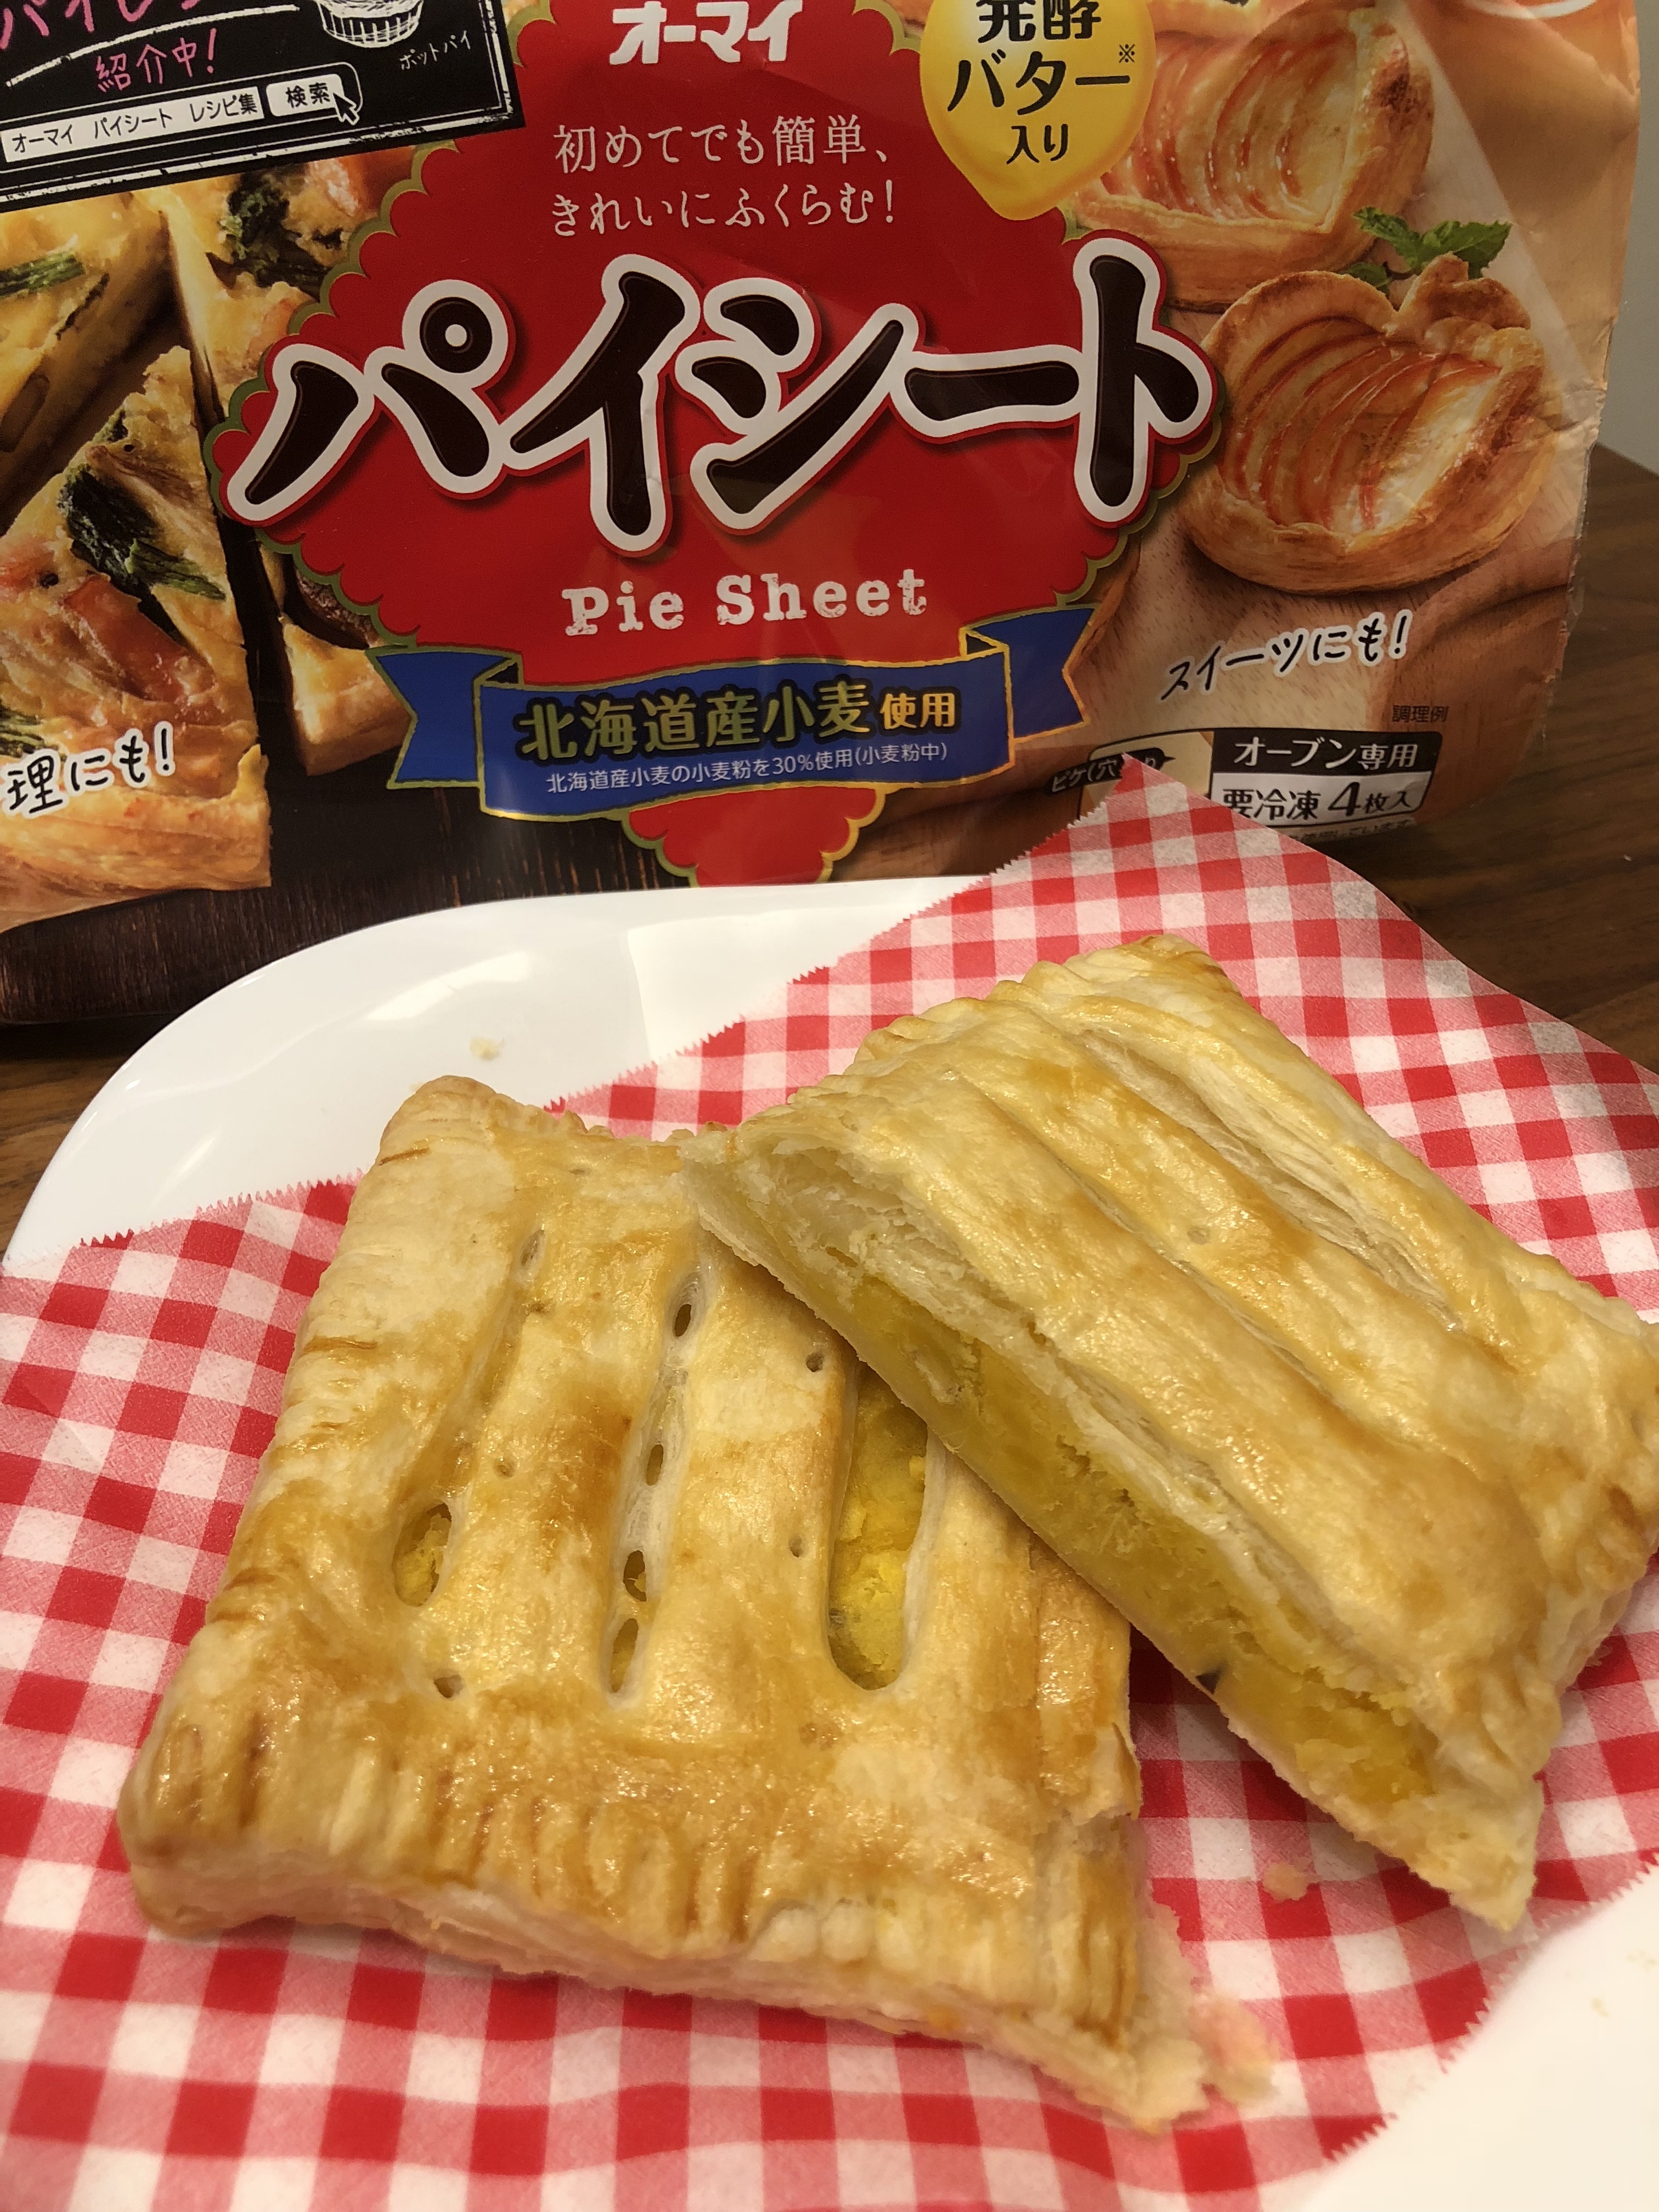 レシピ 日本製粉のホクホク さつまいもパイ 冷凍食品の冷食 Com ホクホクなさつまいもがサクサクのパイと相性抜群なレシピです